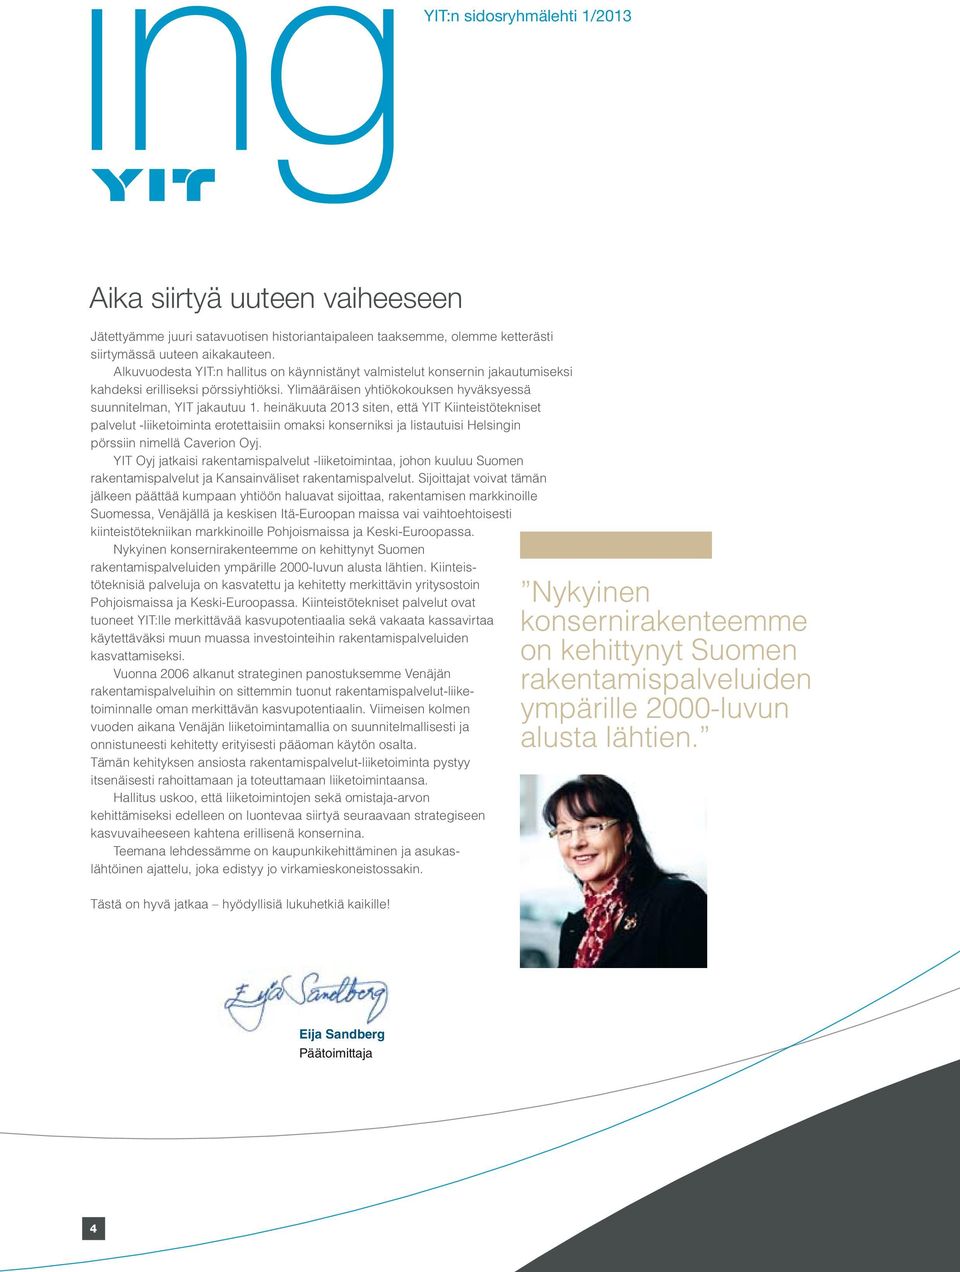 heinäkuuta 2013 siten, että YIT Kiinteistötekniset palvelut -liiketoiminta erotettaisiin omaksi konserniksi ja listautuisi Helsingin pörssiin nimellä Caverion Oyj.